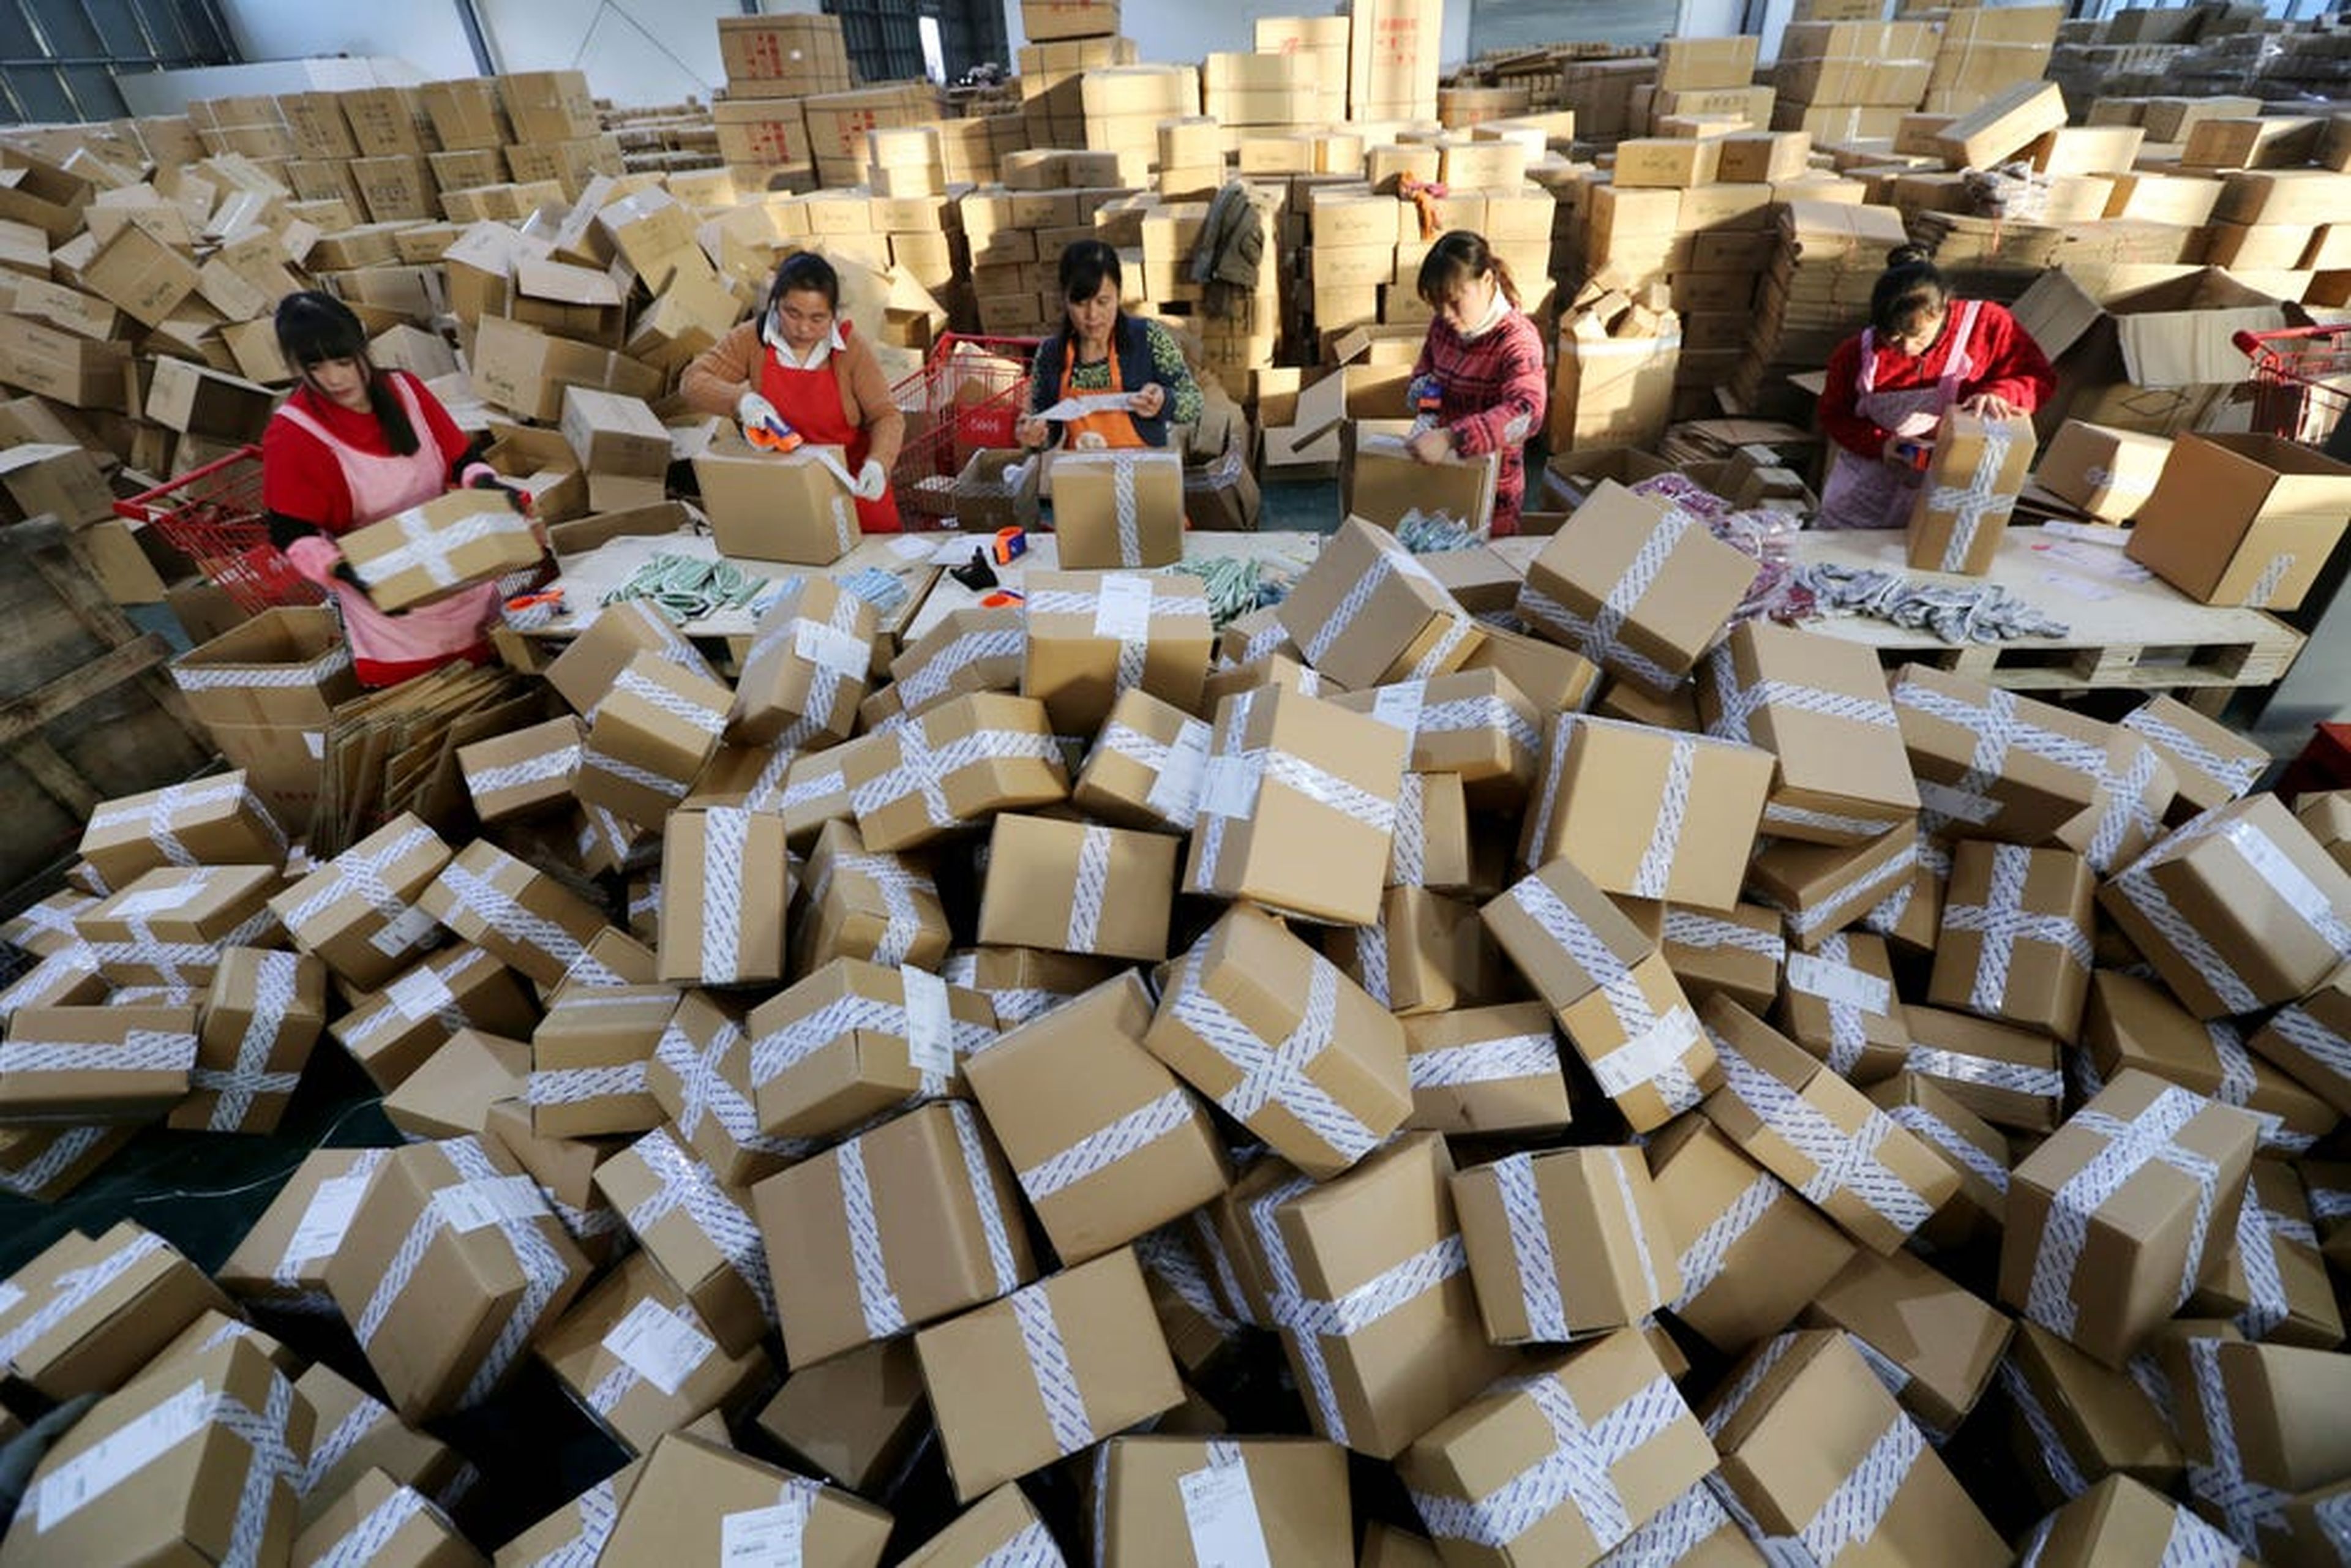 En imagen, los trabajadores distribuyen paquetes exprés en un centro logístico de China Post durante el festival de compras global del Día del Soltero de Alibaba Group el 11 de noviembre de 2016 en Ganyu, provincia de Jiangsu de China.